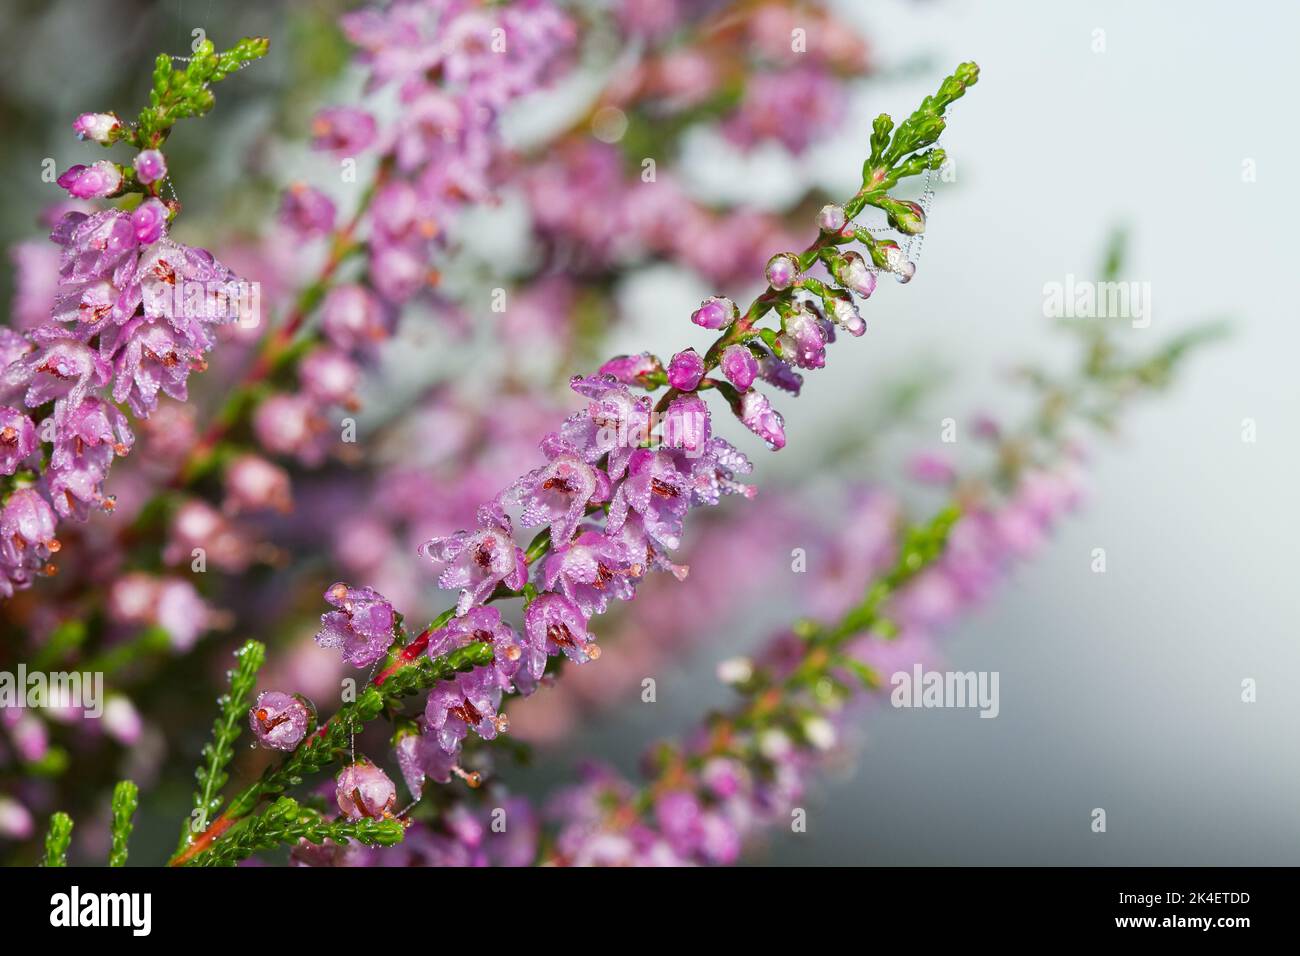 Flores malvas dewed de brezo común en la mañana temprano Foto de stock